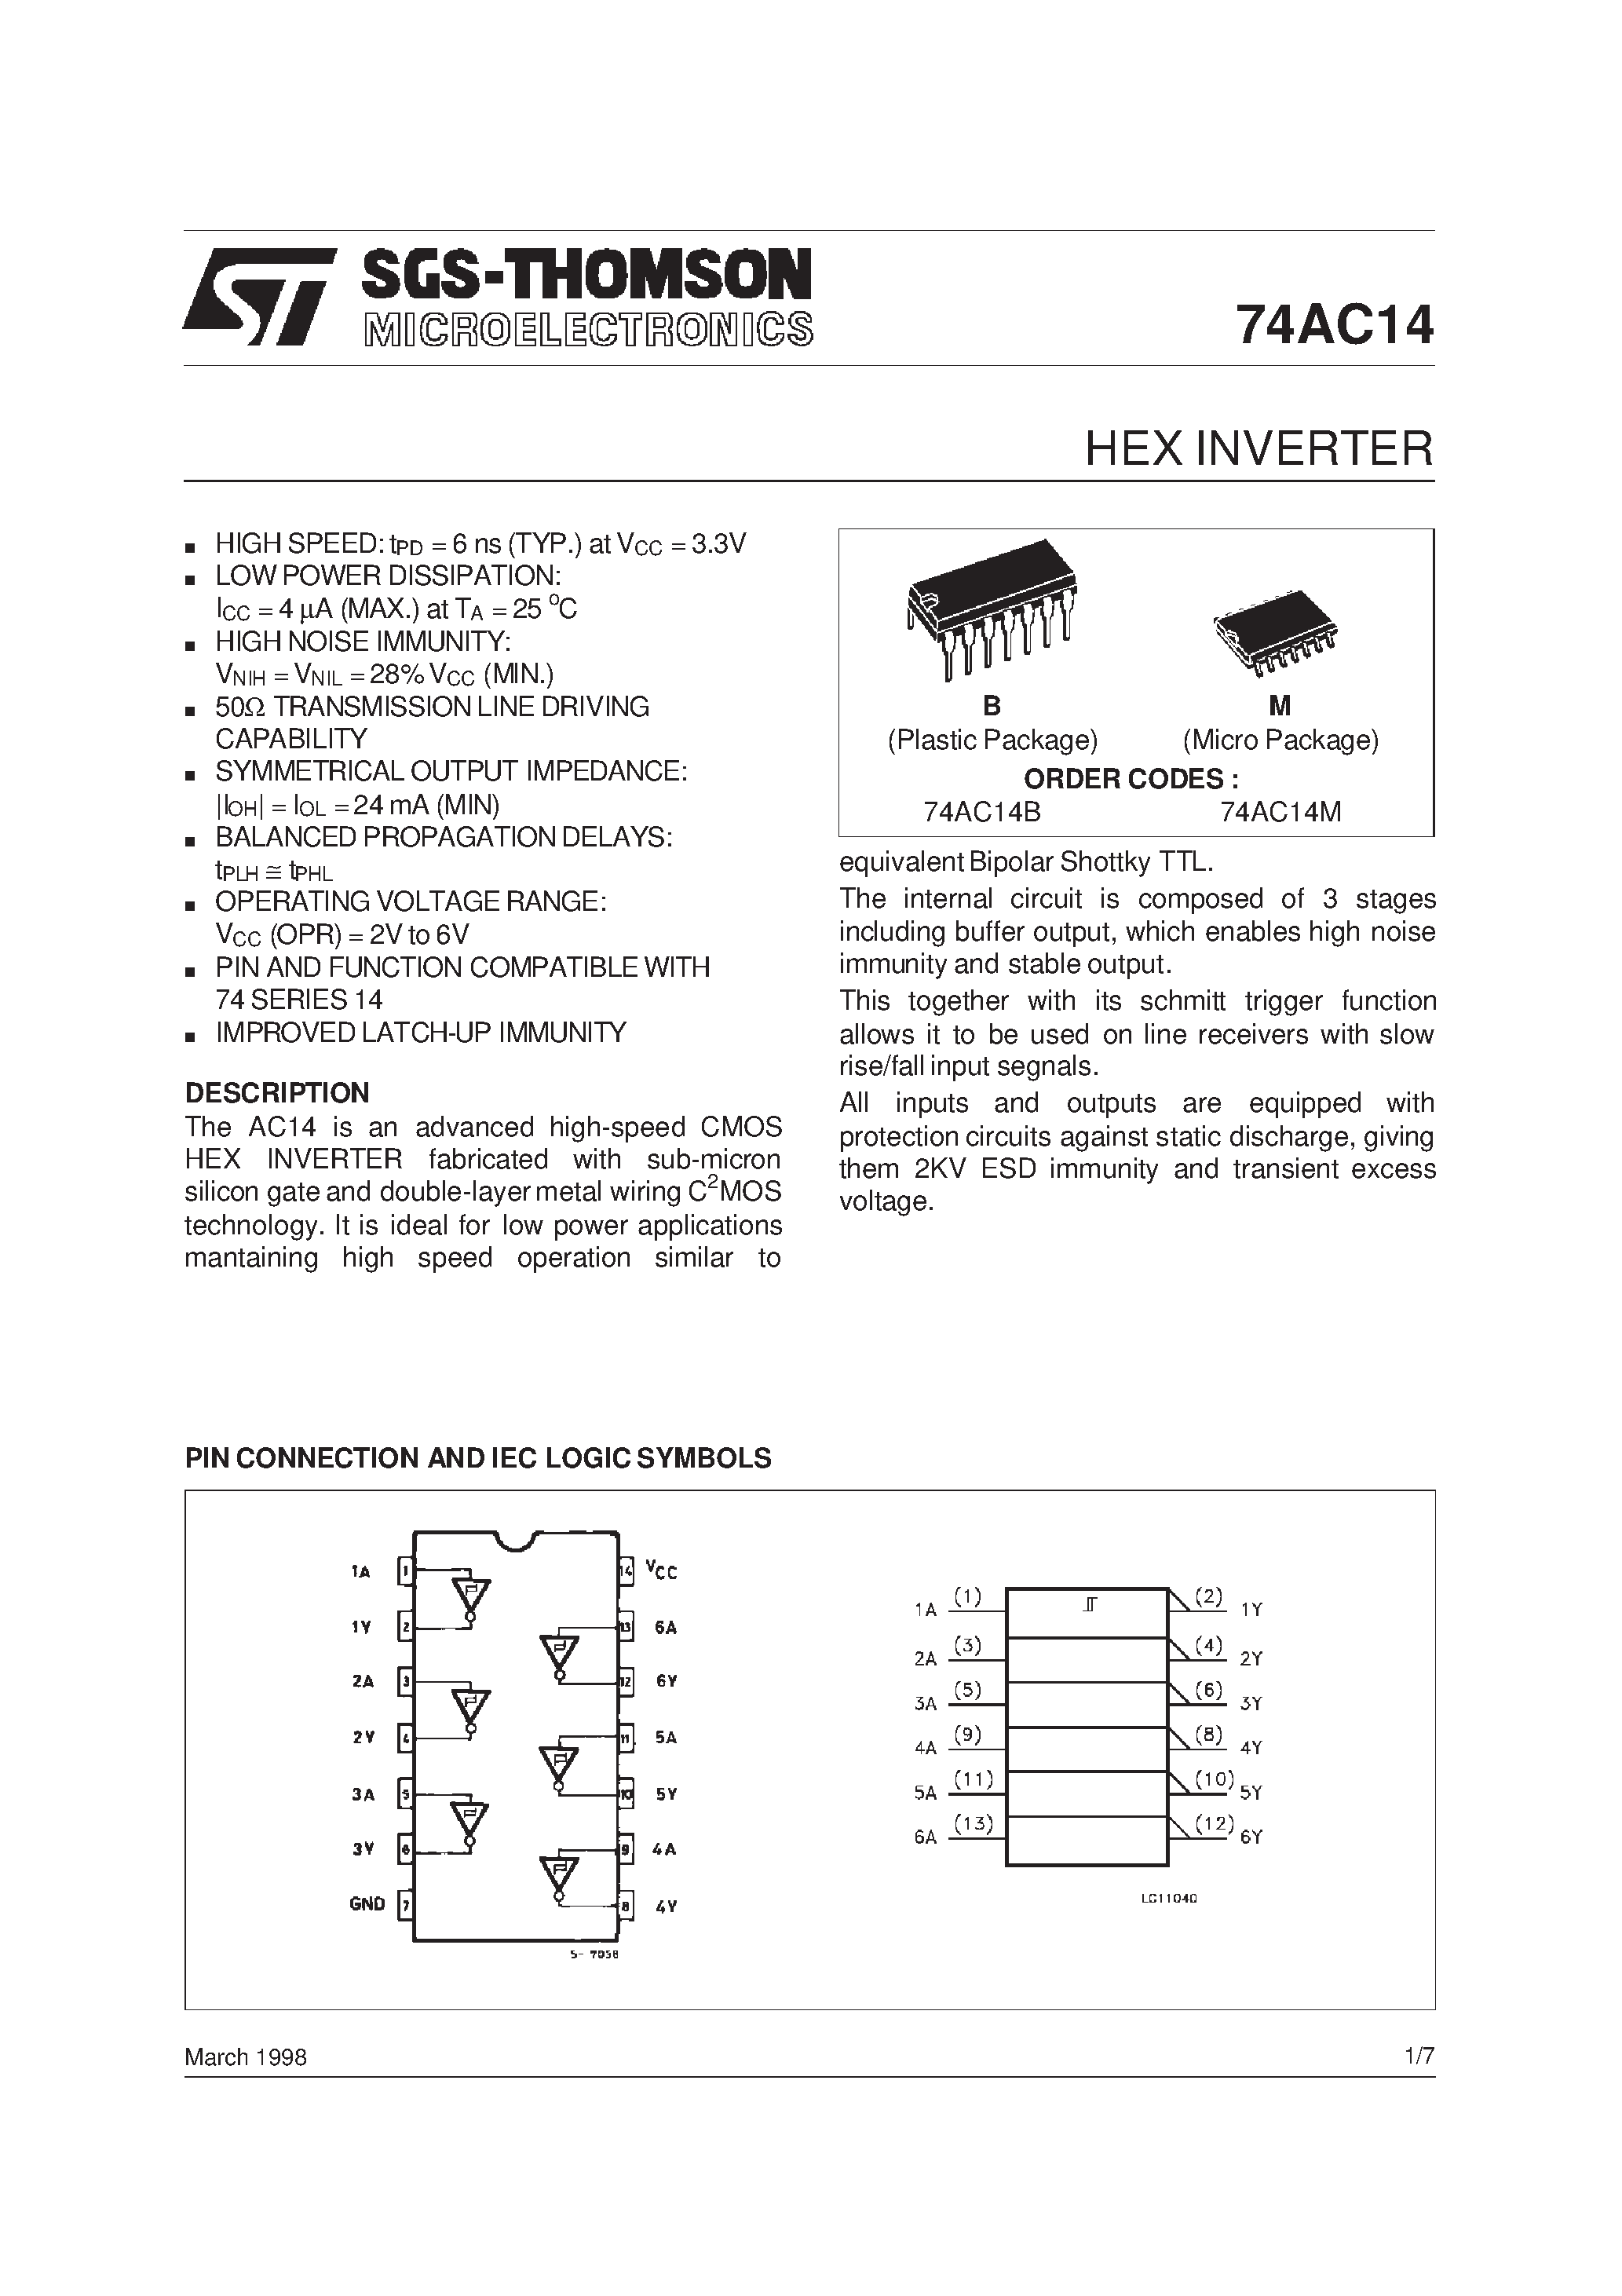 Datasheet 74AC14PC - Hex Inverter with Schmitt Trigger Input page 1